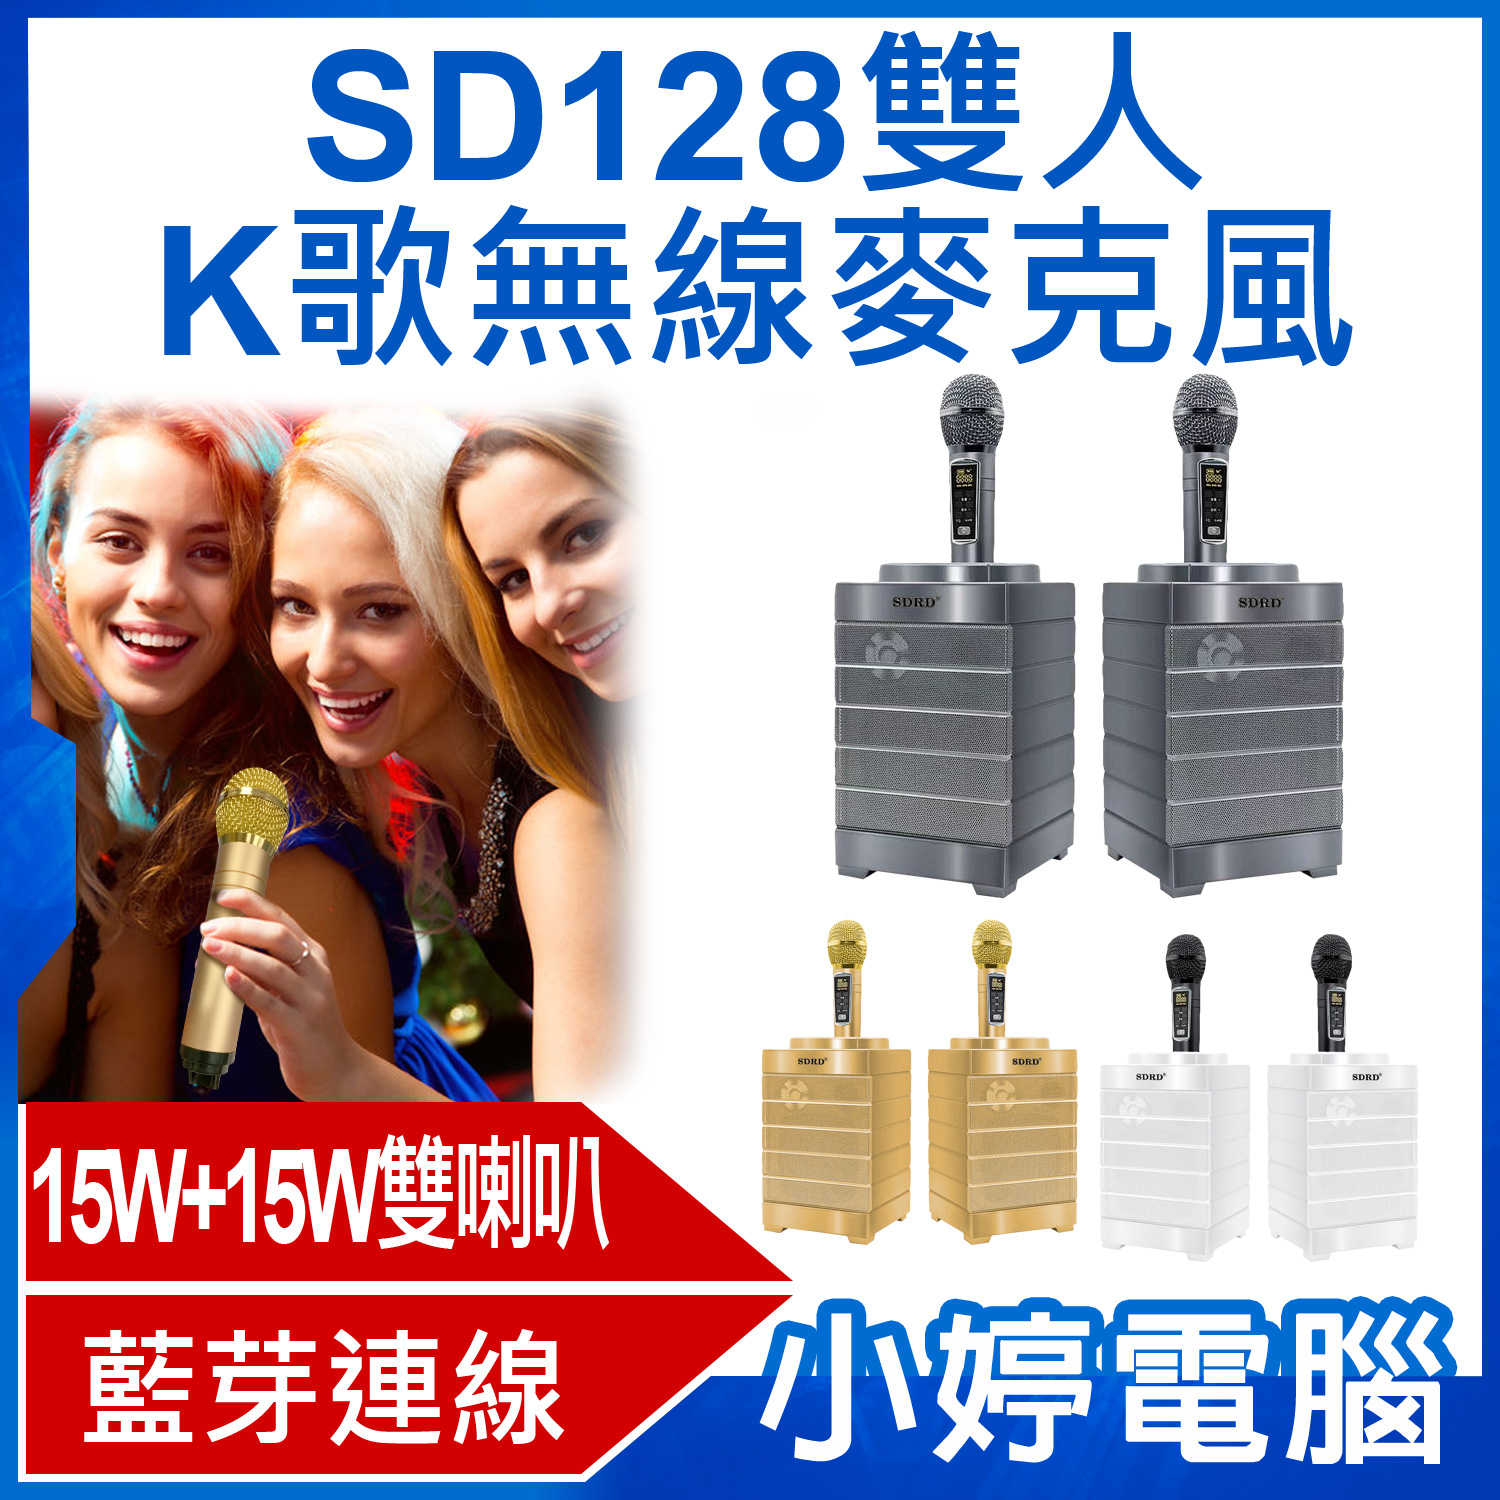 【小婷電腦】SD128雙人K歌無線麥克風 15W+15W雙喇叭 藍芽播放 一鍵消除人聲 外接孔多元